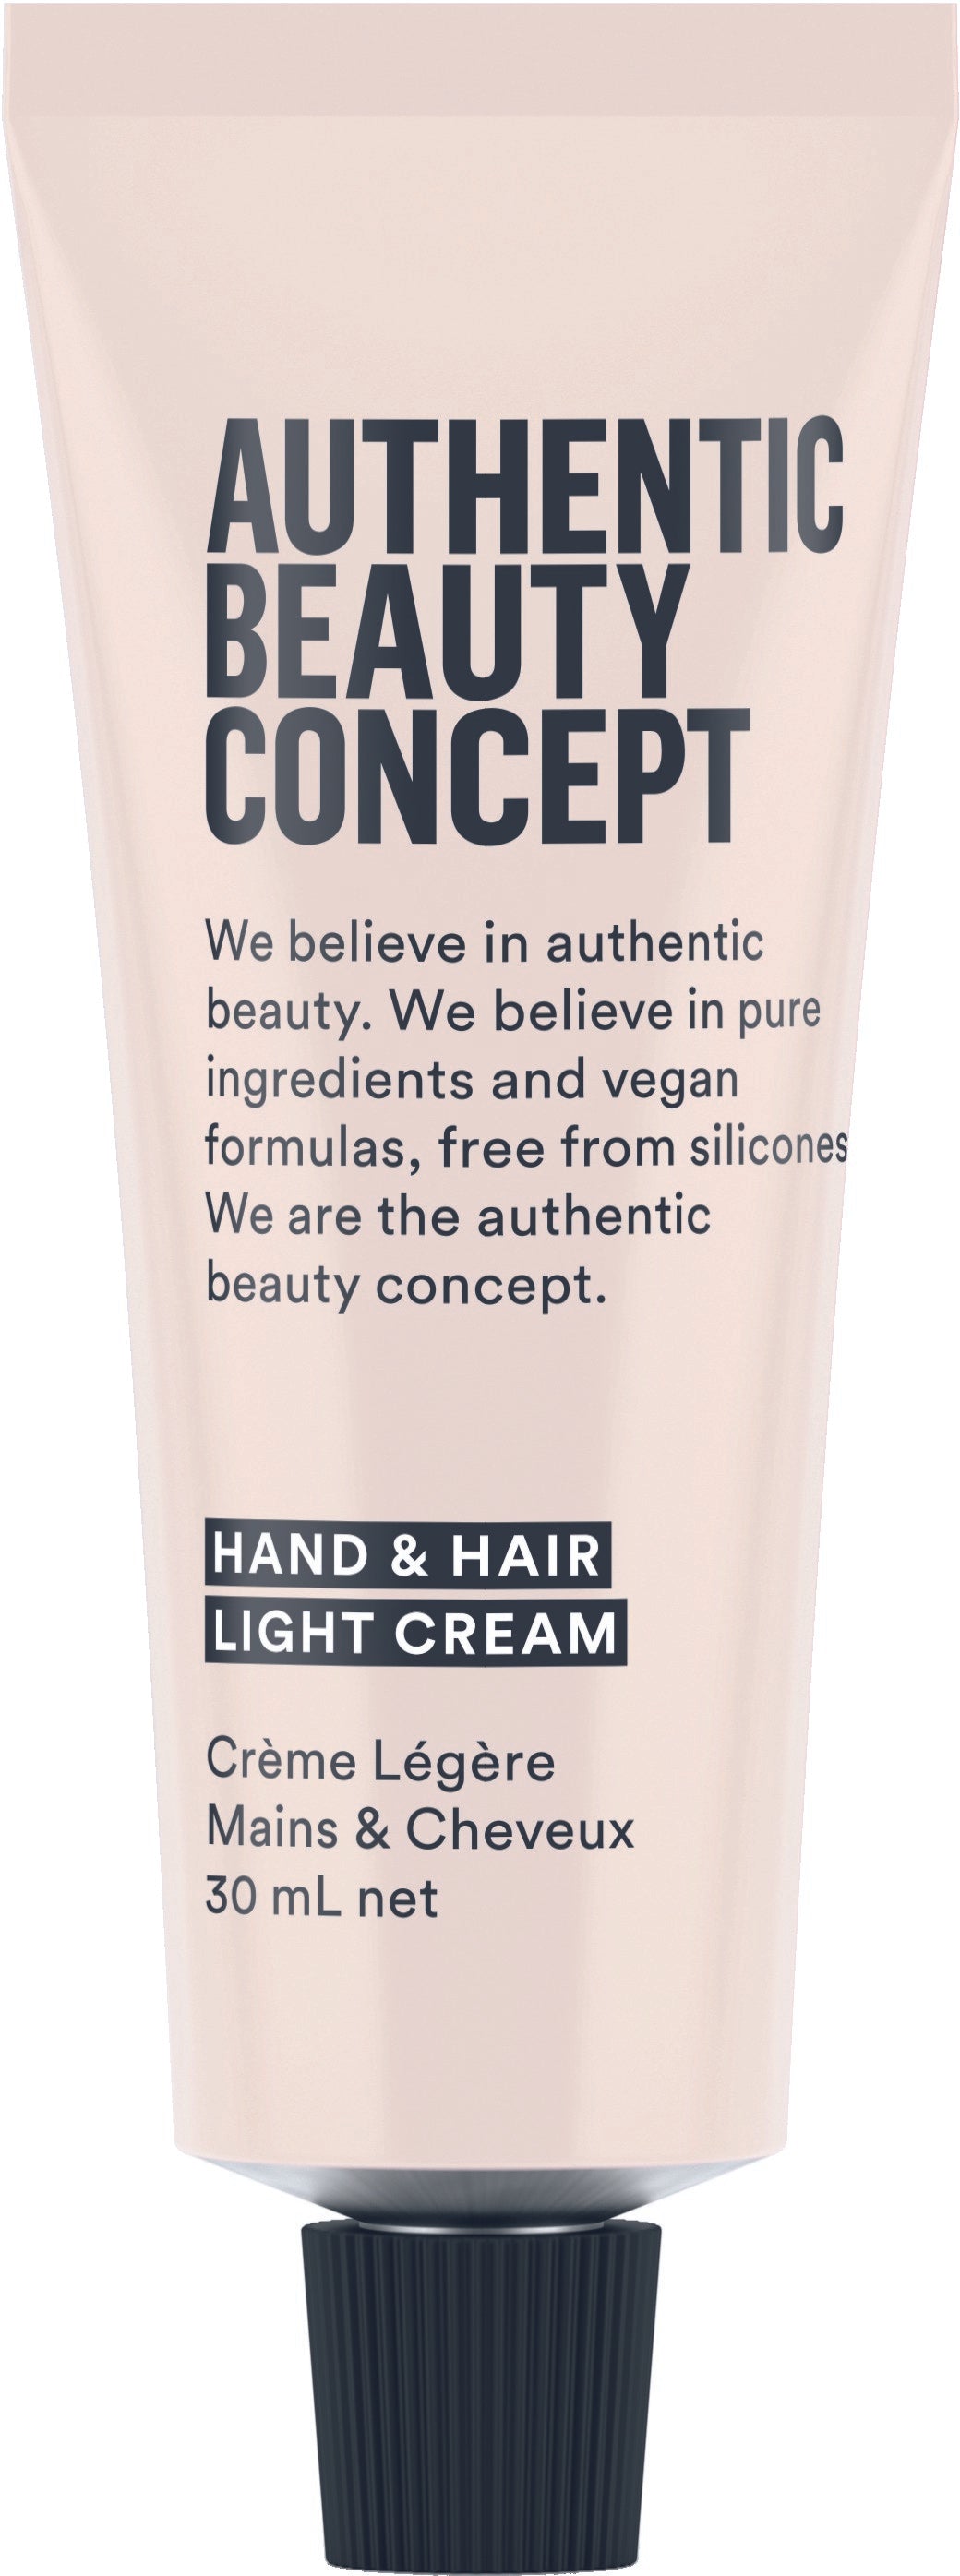 Authentic Beauty Concept Hand & Hair Light Cream 30ml at Eds Hair Bramhall